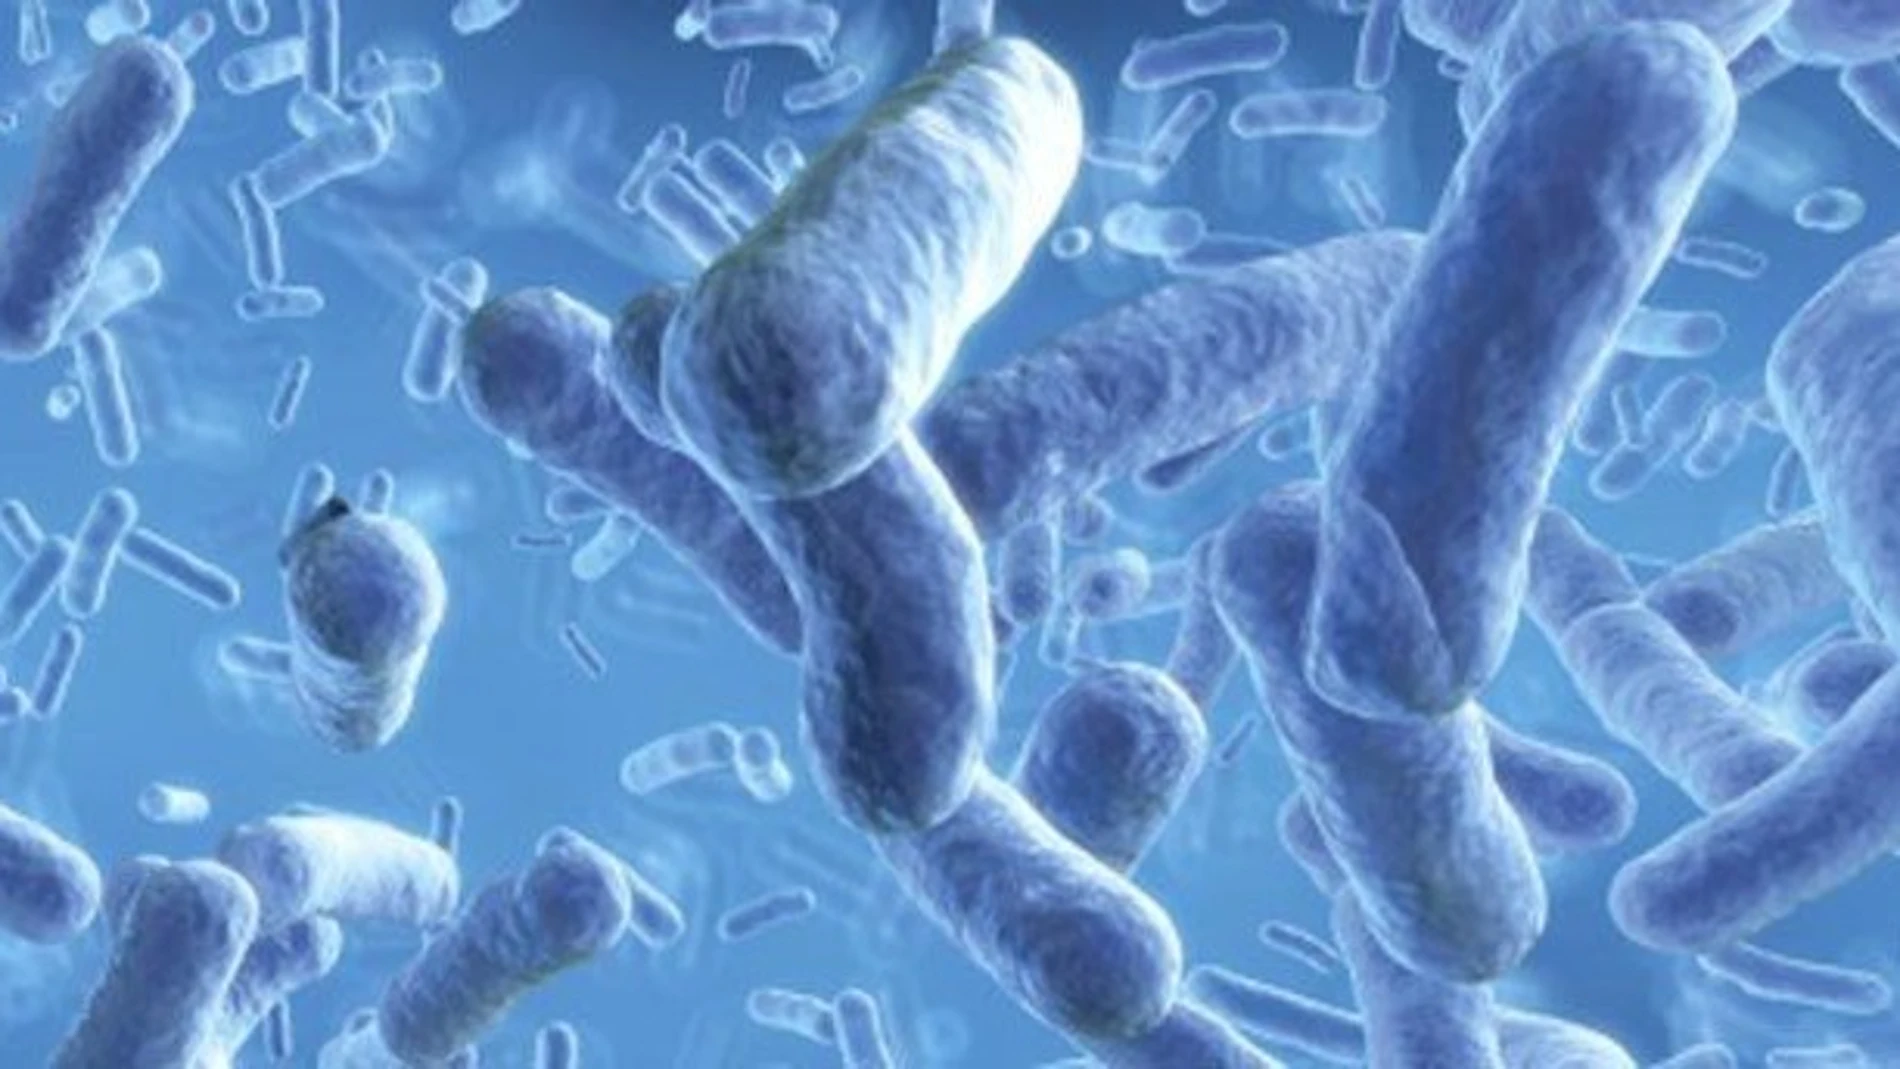 Imagen microscópica de la bacteria de la tosferina, altamente contagiosa